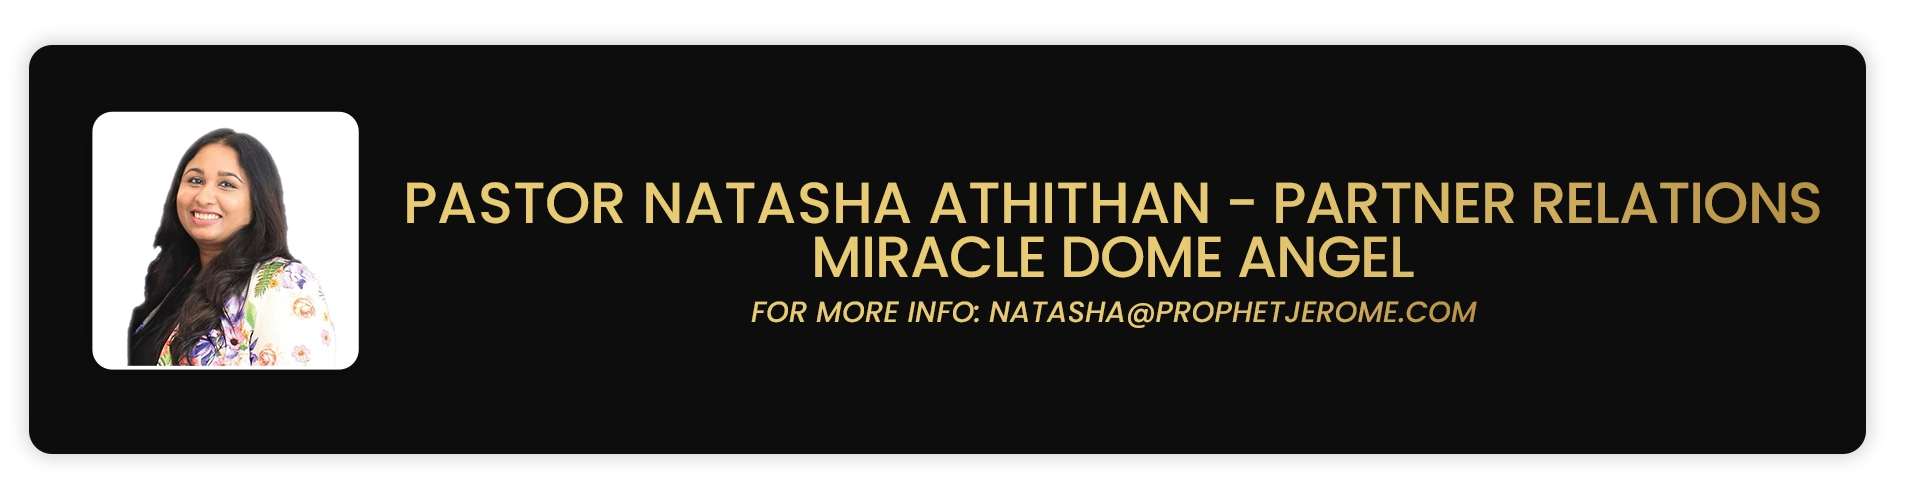 Miracle Dome Angel - Pastor Natasha